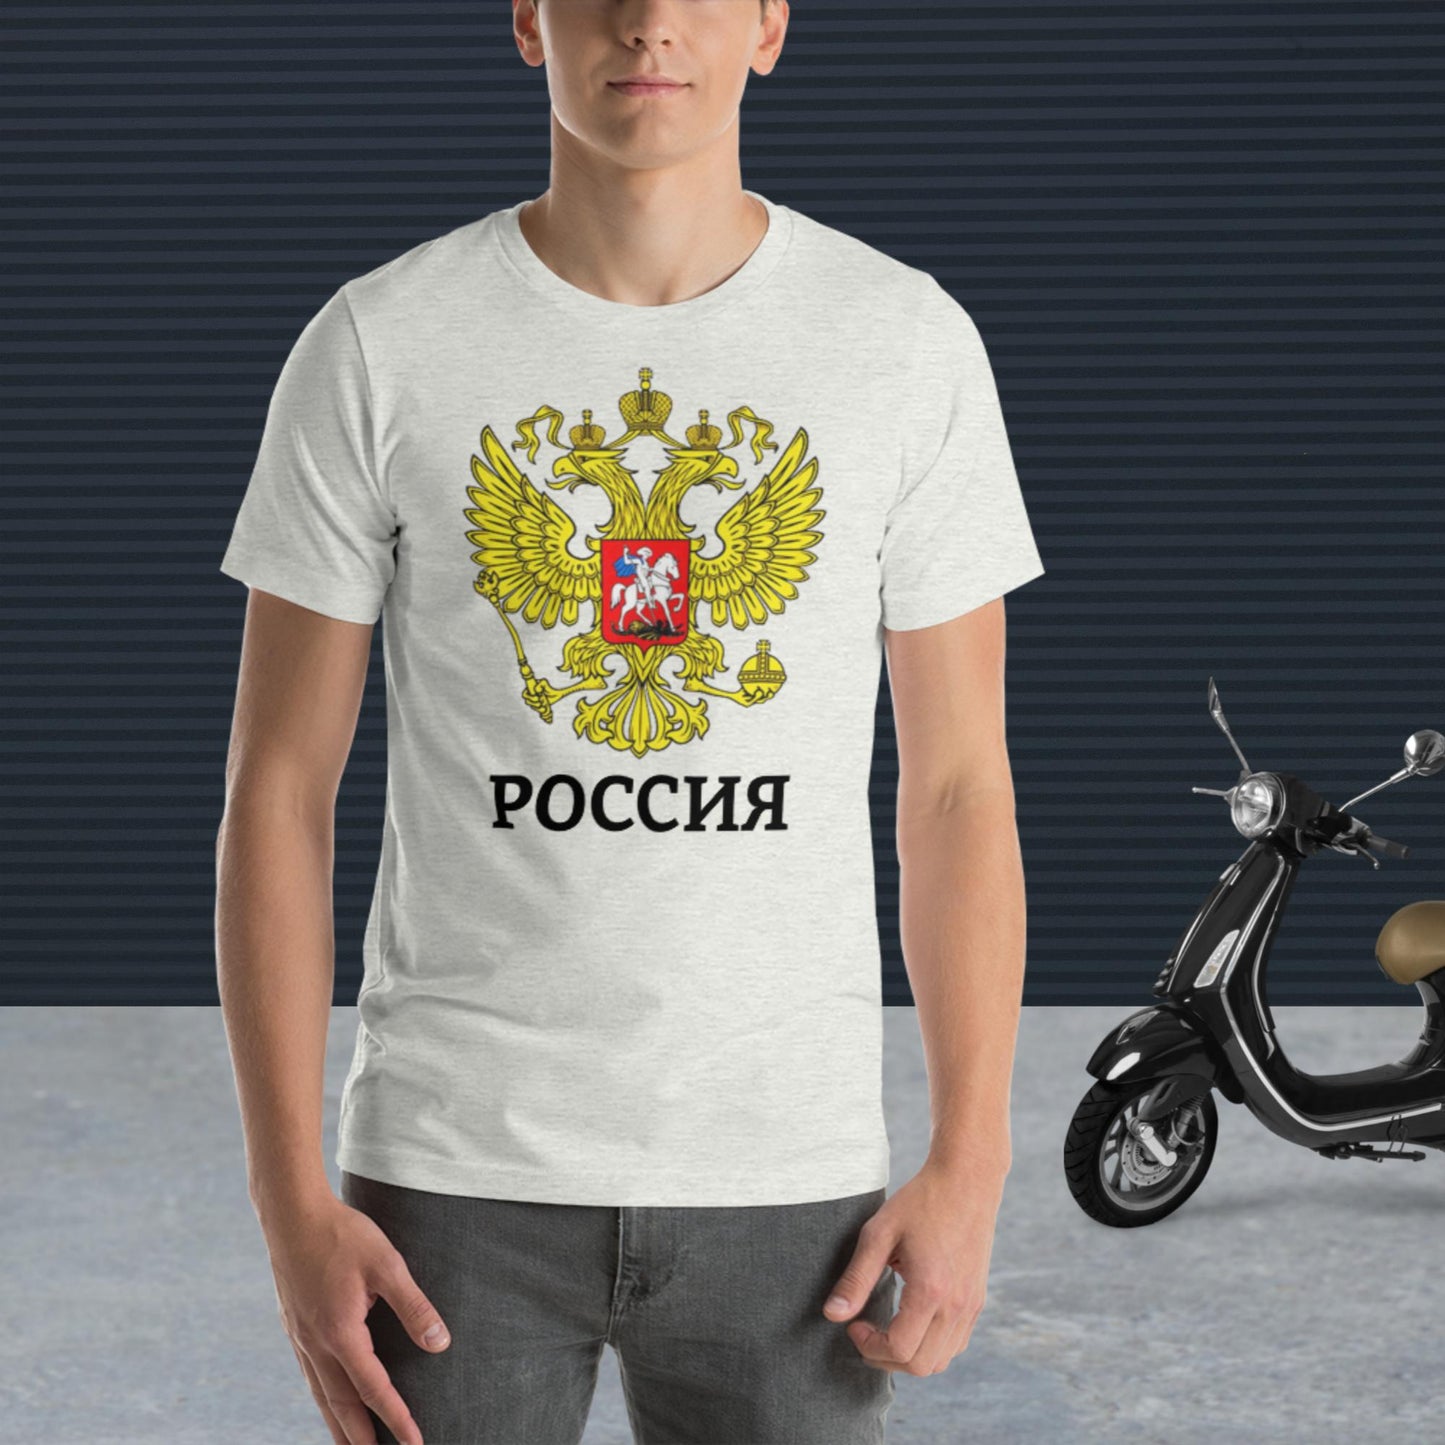 Russland Basic T-Shirt mit weiteren zusätzlichen Farben